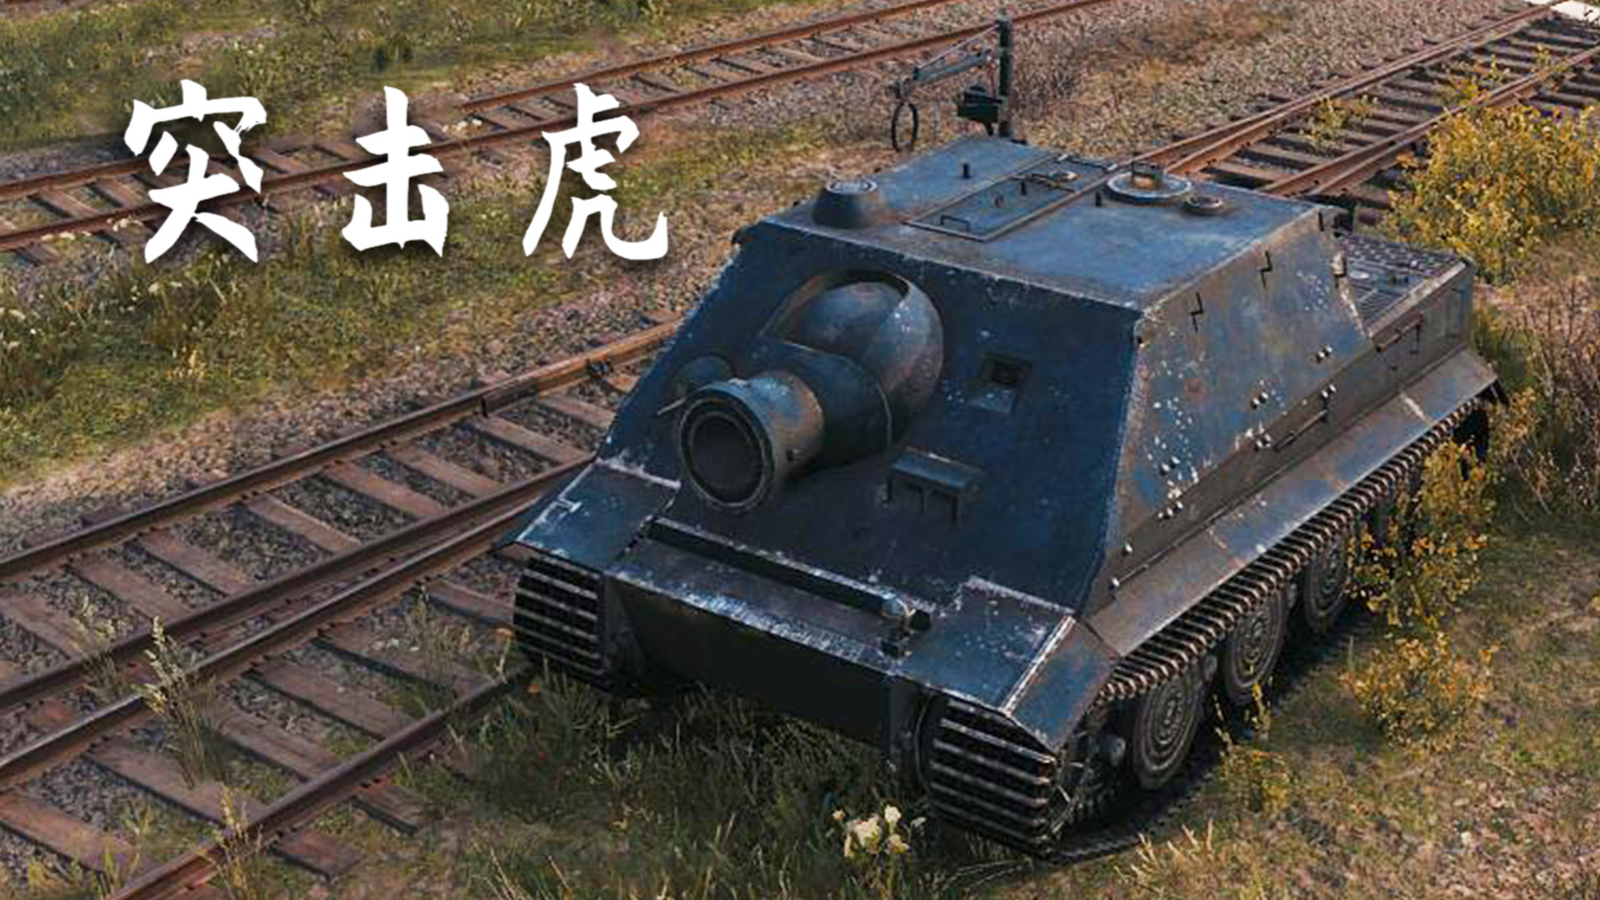 【坦克世界】iii号突击炮b型:5杀 - 2千2输出(1v4翻盘),1血翻盘(鲁